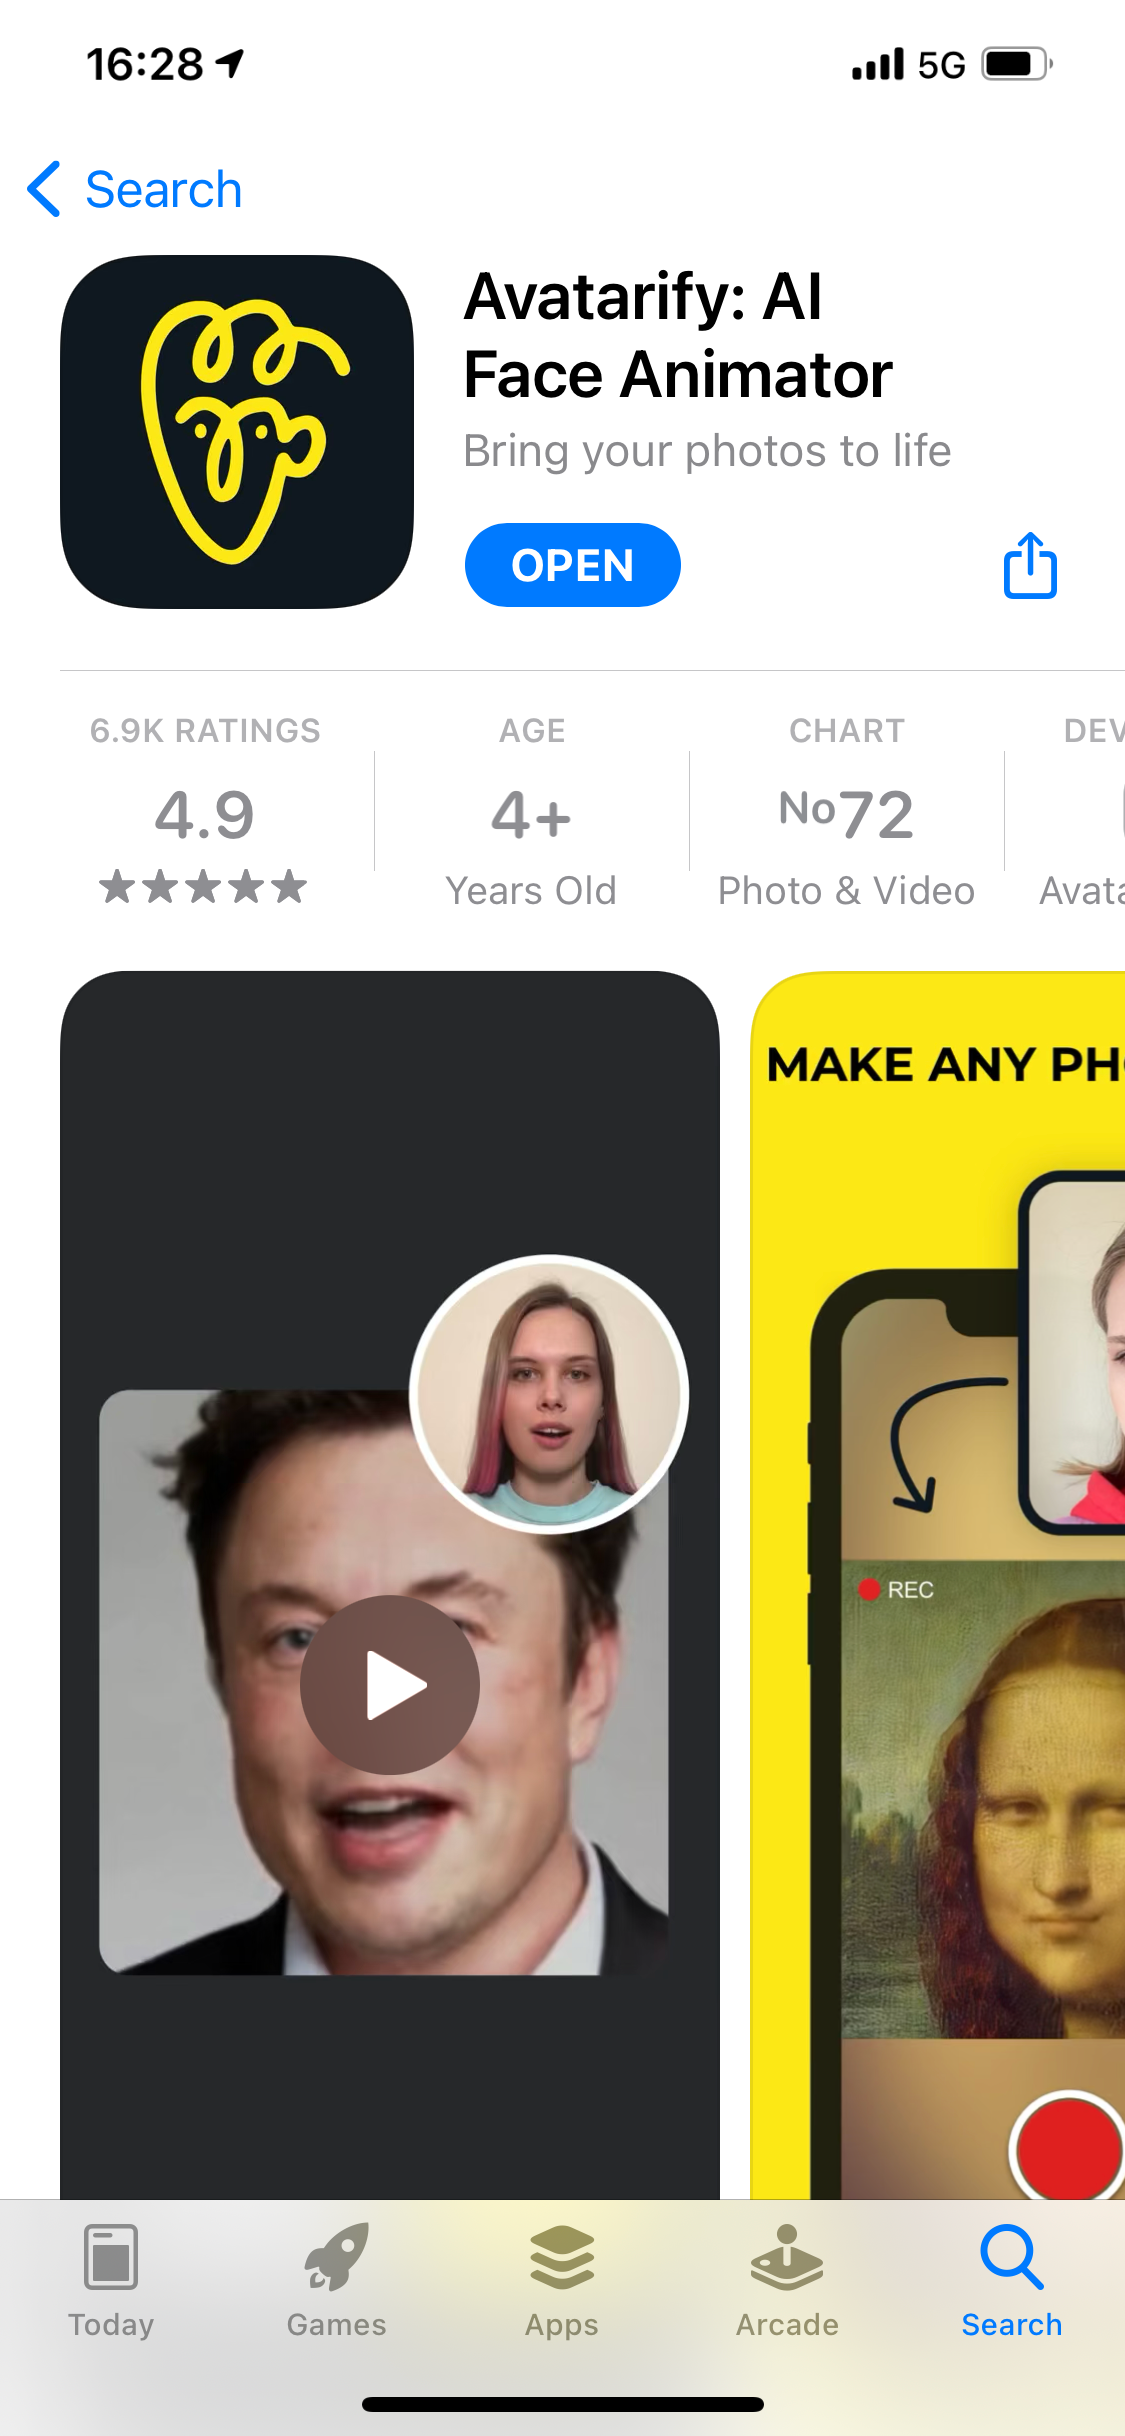 Review | รีวิวแอป Avatarify เปลี่ยนภาพนิ่งให้ขยับปากพูด หรือร้องเพลงได้ตามต้องการ (สำหรับ iOS)